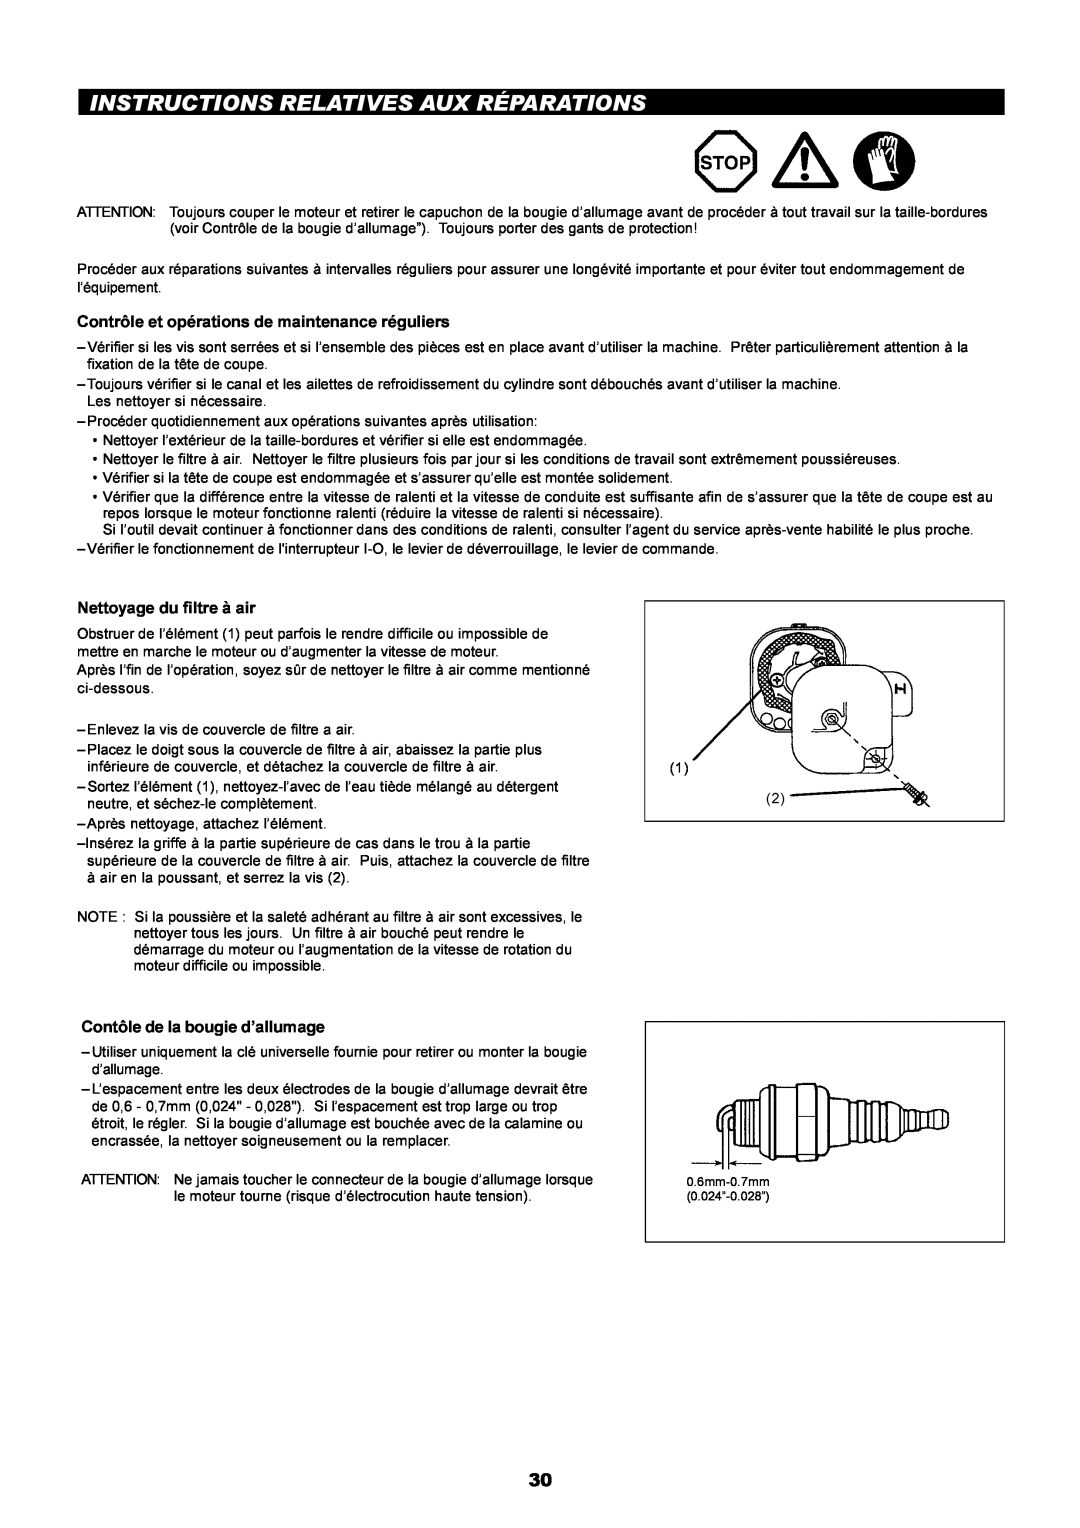 Makita LT-210 instruction manual Instructions Relatives Aux Réparations, Contrôle et opérations de maintenance réguliers 